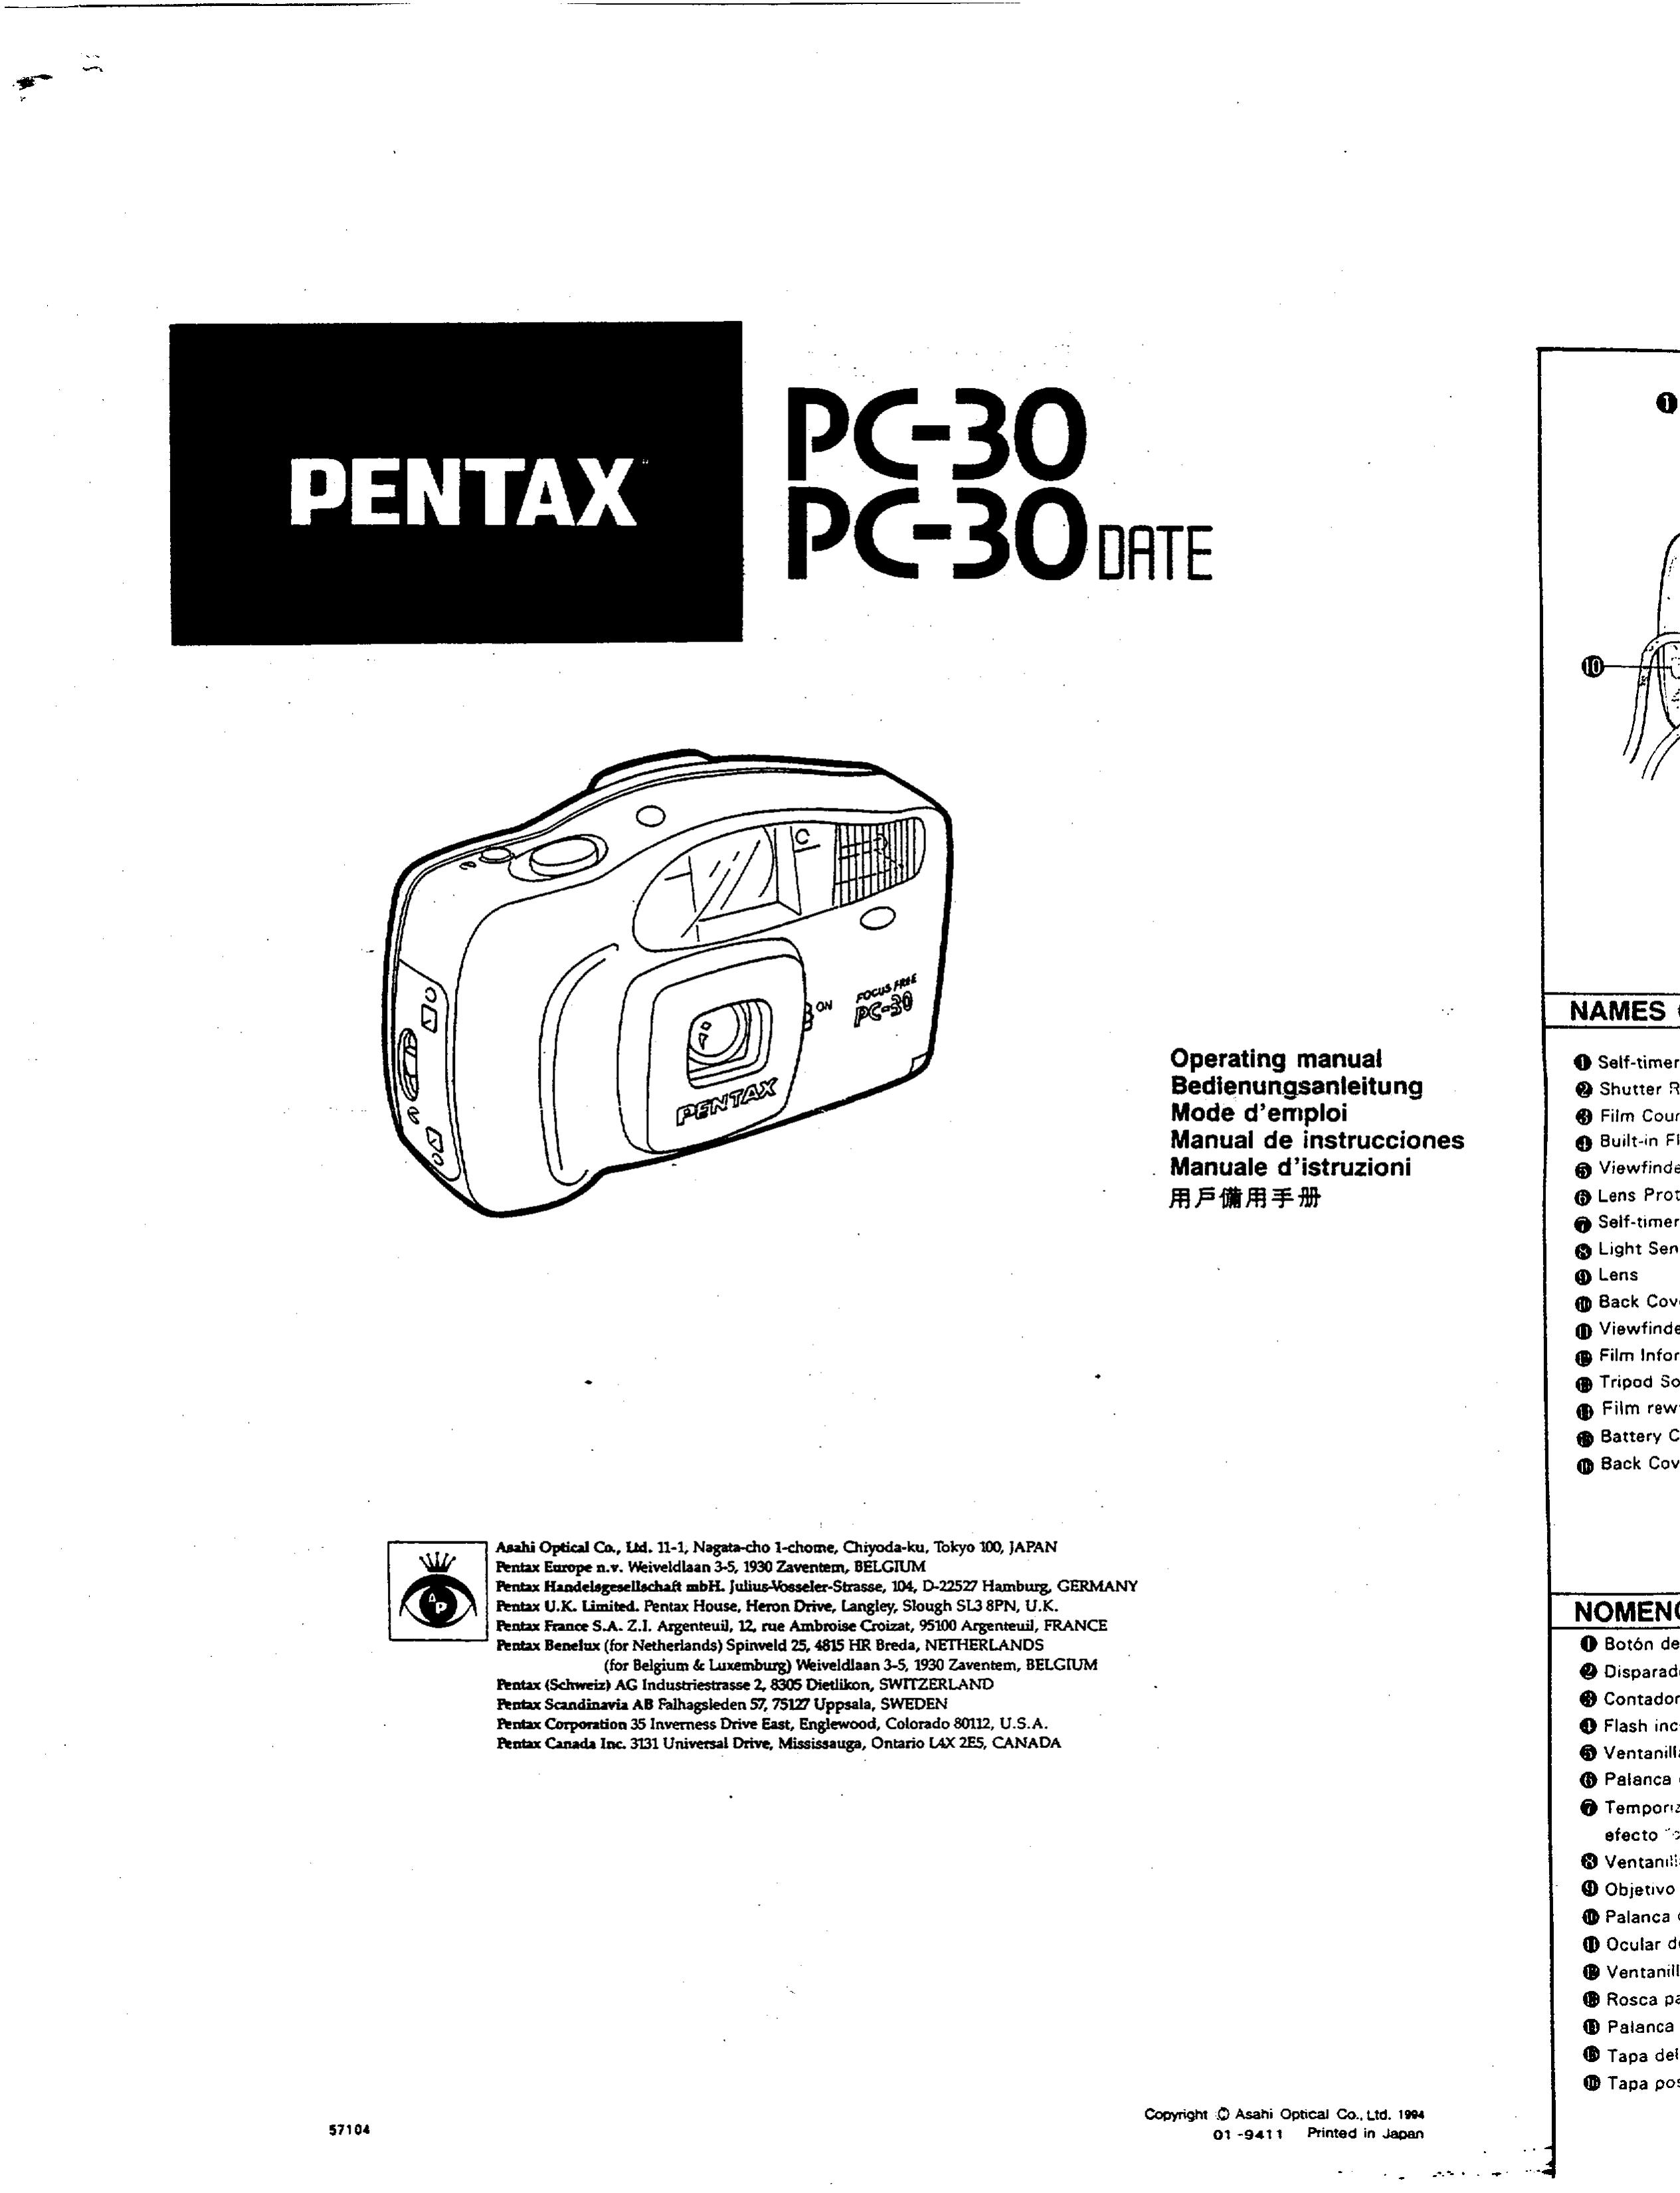 Pentax PC-30 DATE Security Camera User Manual